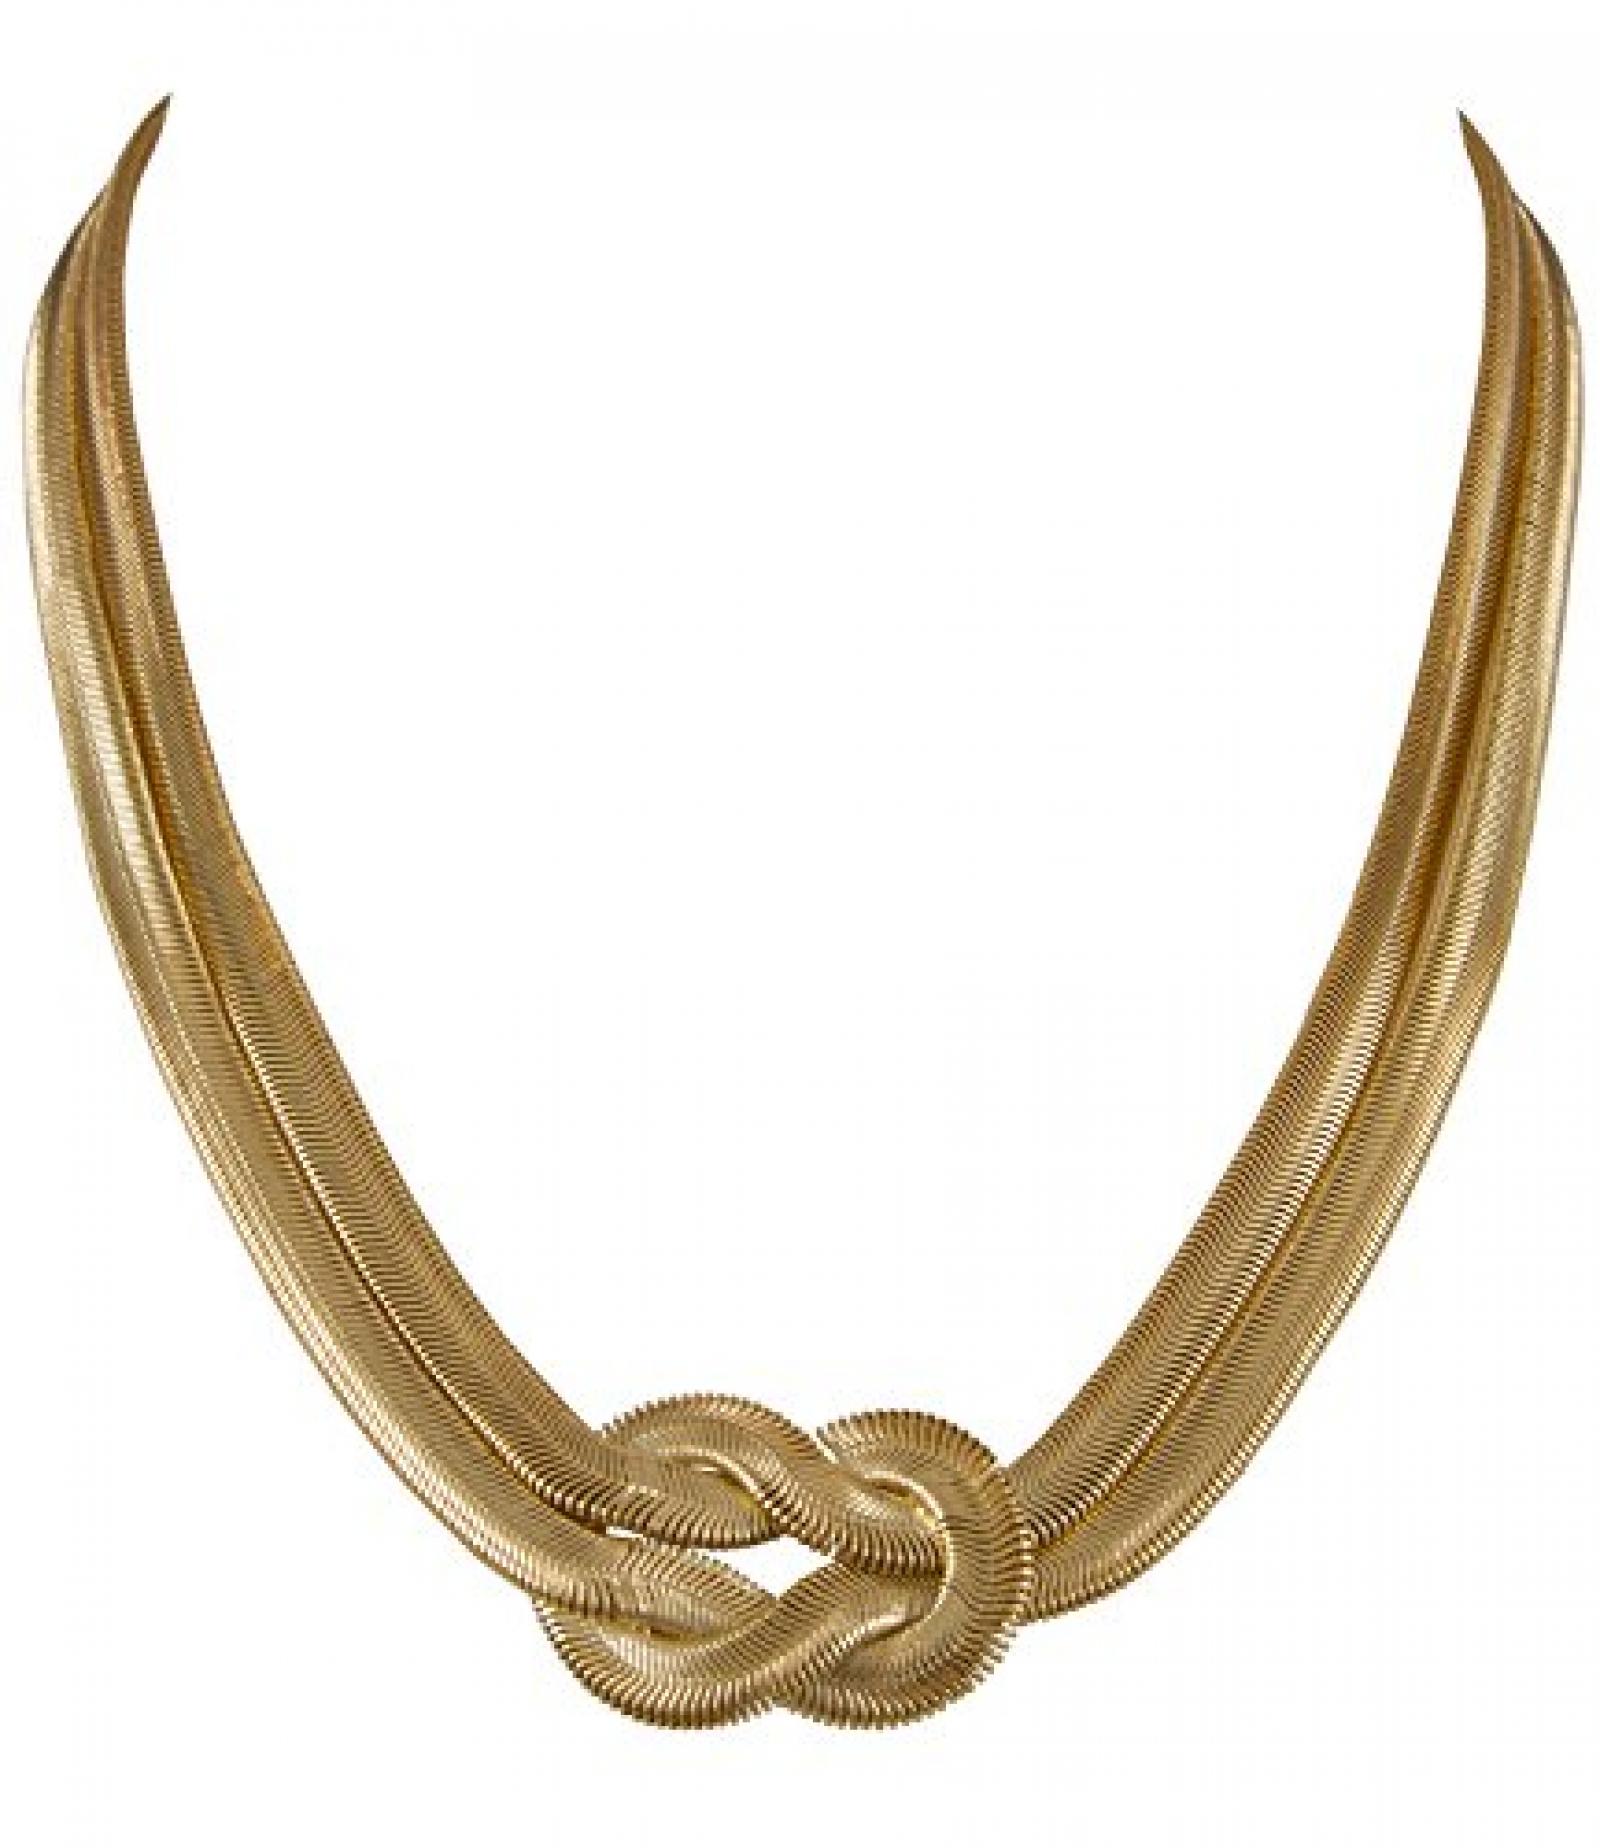 SIX "Wired" goldene zweireihige Schlangen Kette in Knoten Optik (380-729) 